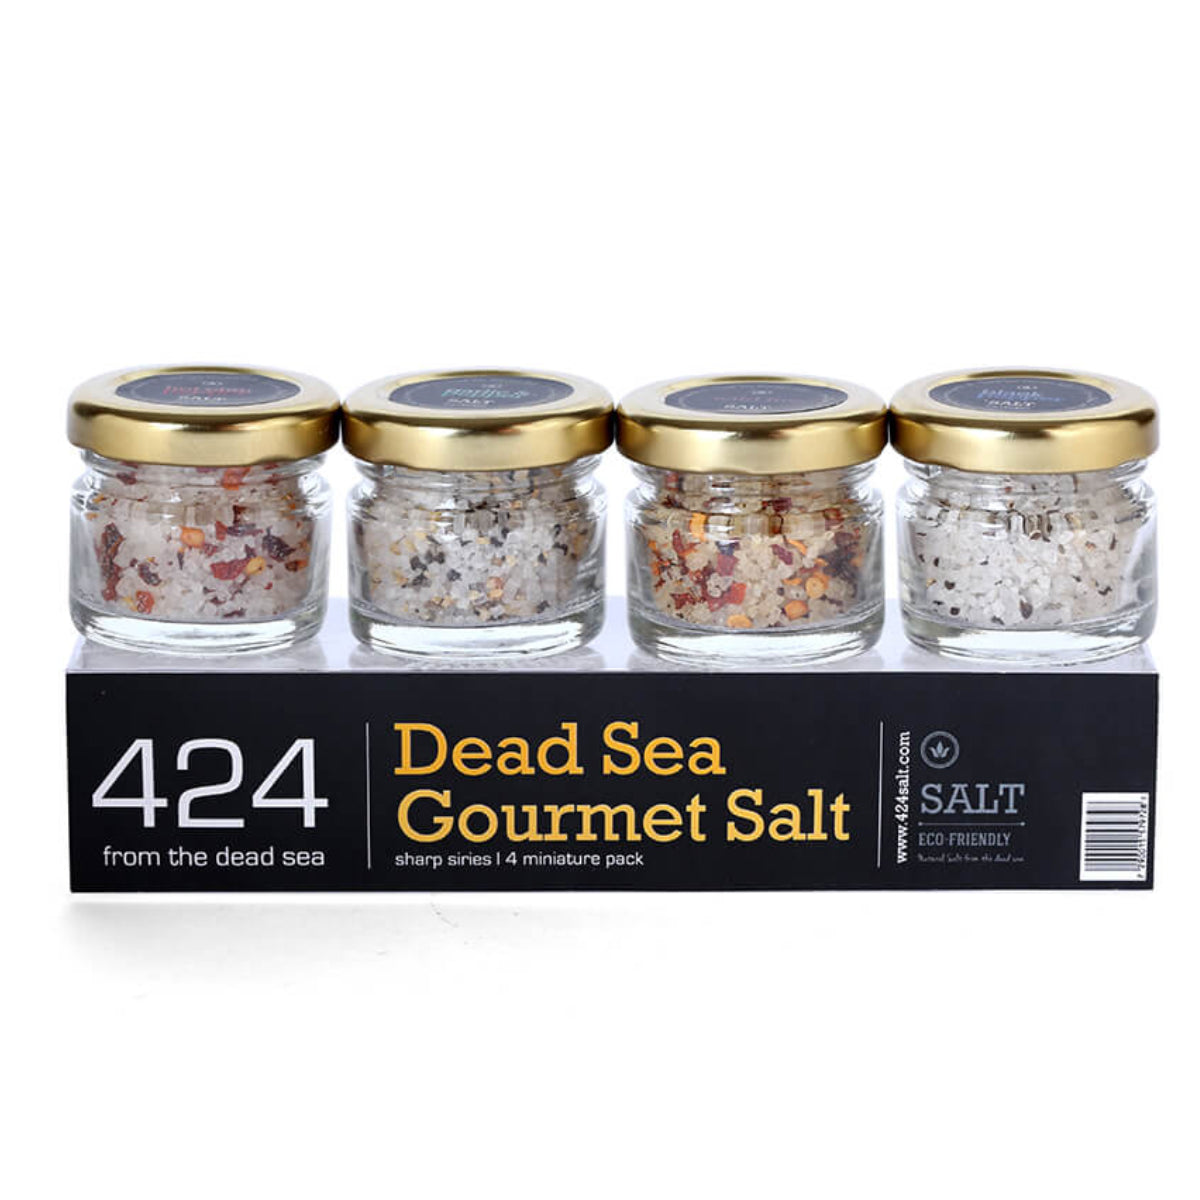 4 mix mini jars Of Gourmet Salt From The Dead Sea